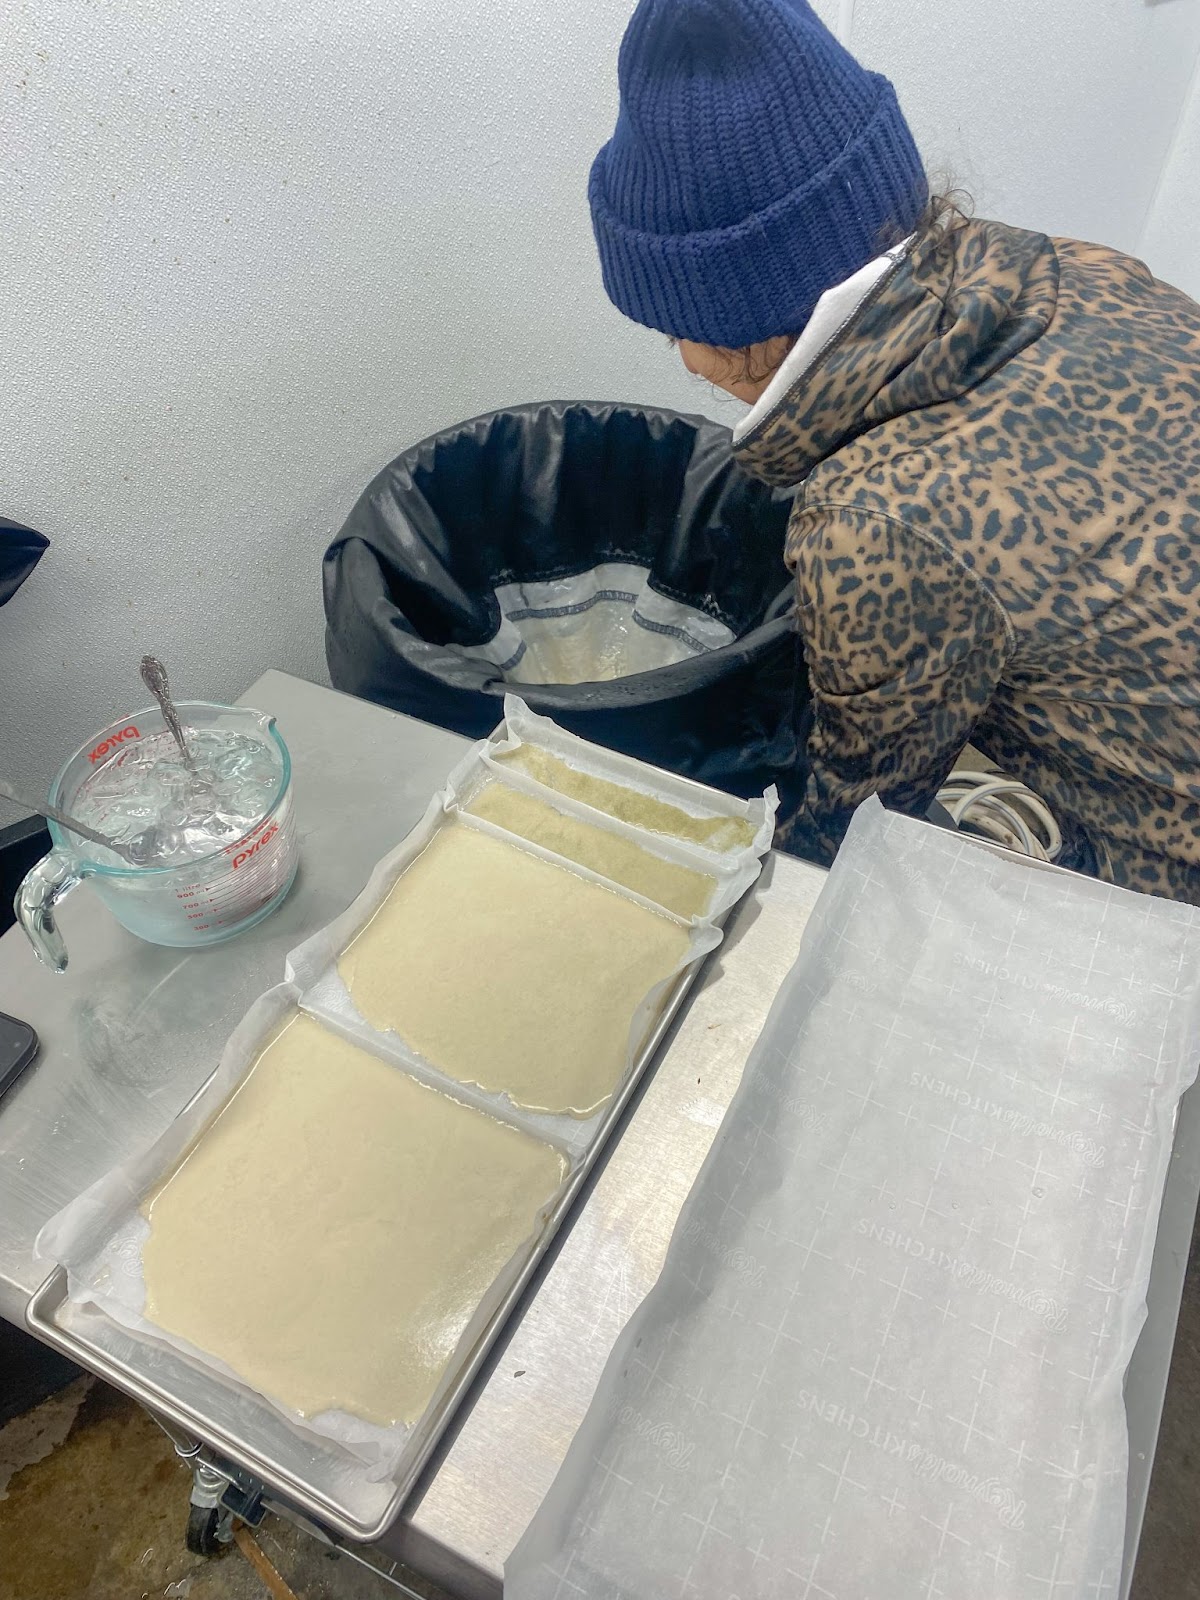 Foto colorida da Alice  coletando coletando e preparando o haxixe para secagem, com bandejas de inox, papel manteiga  e haxixe molhado para secagem